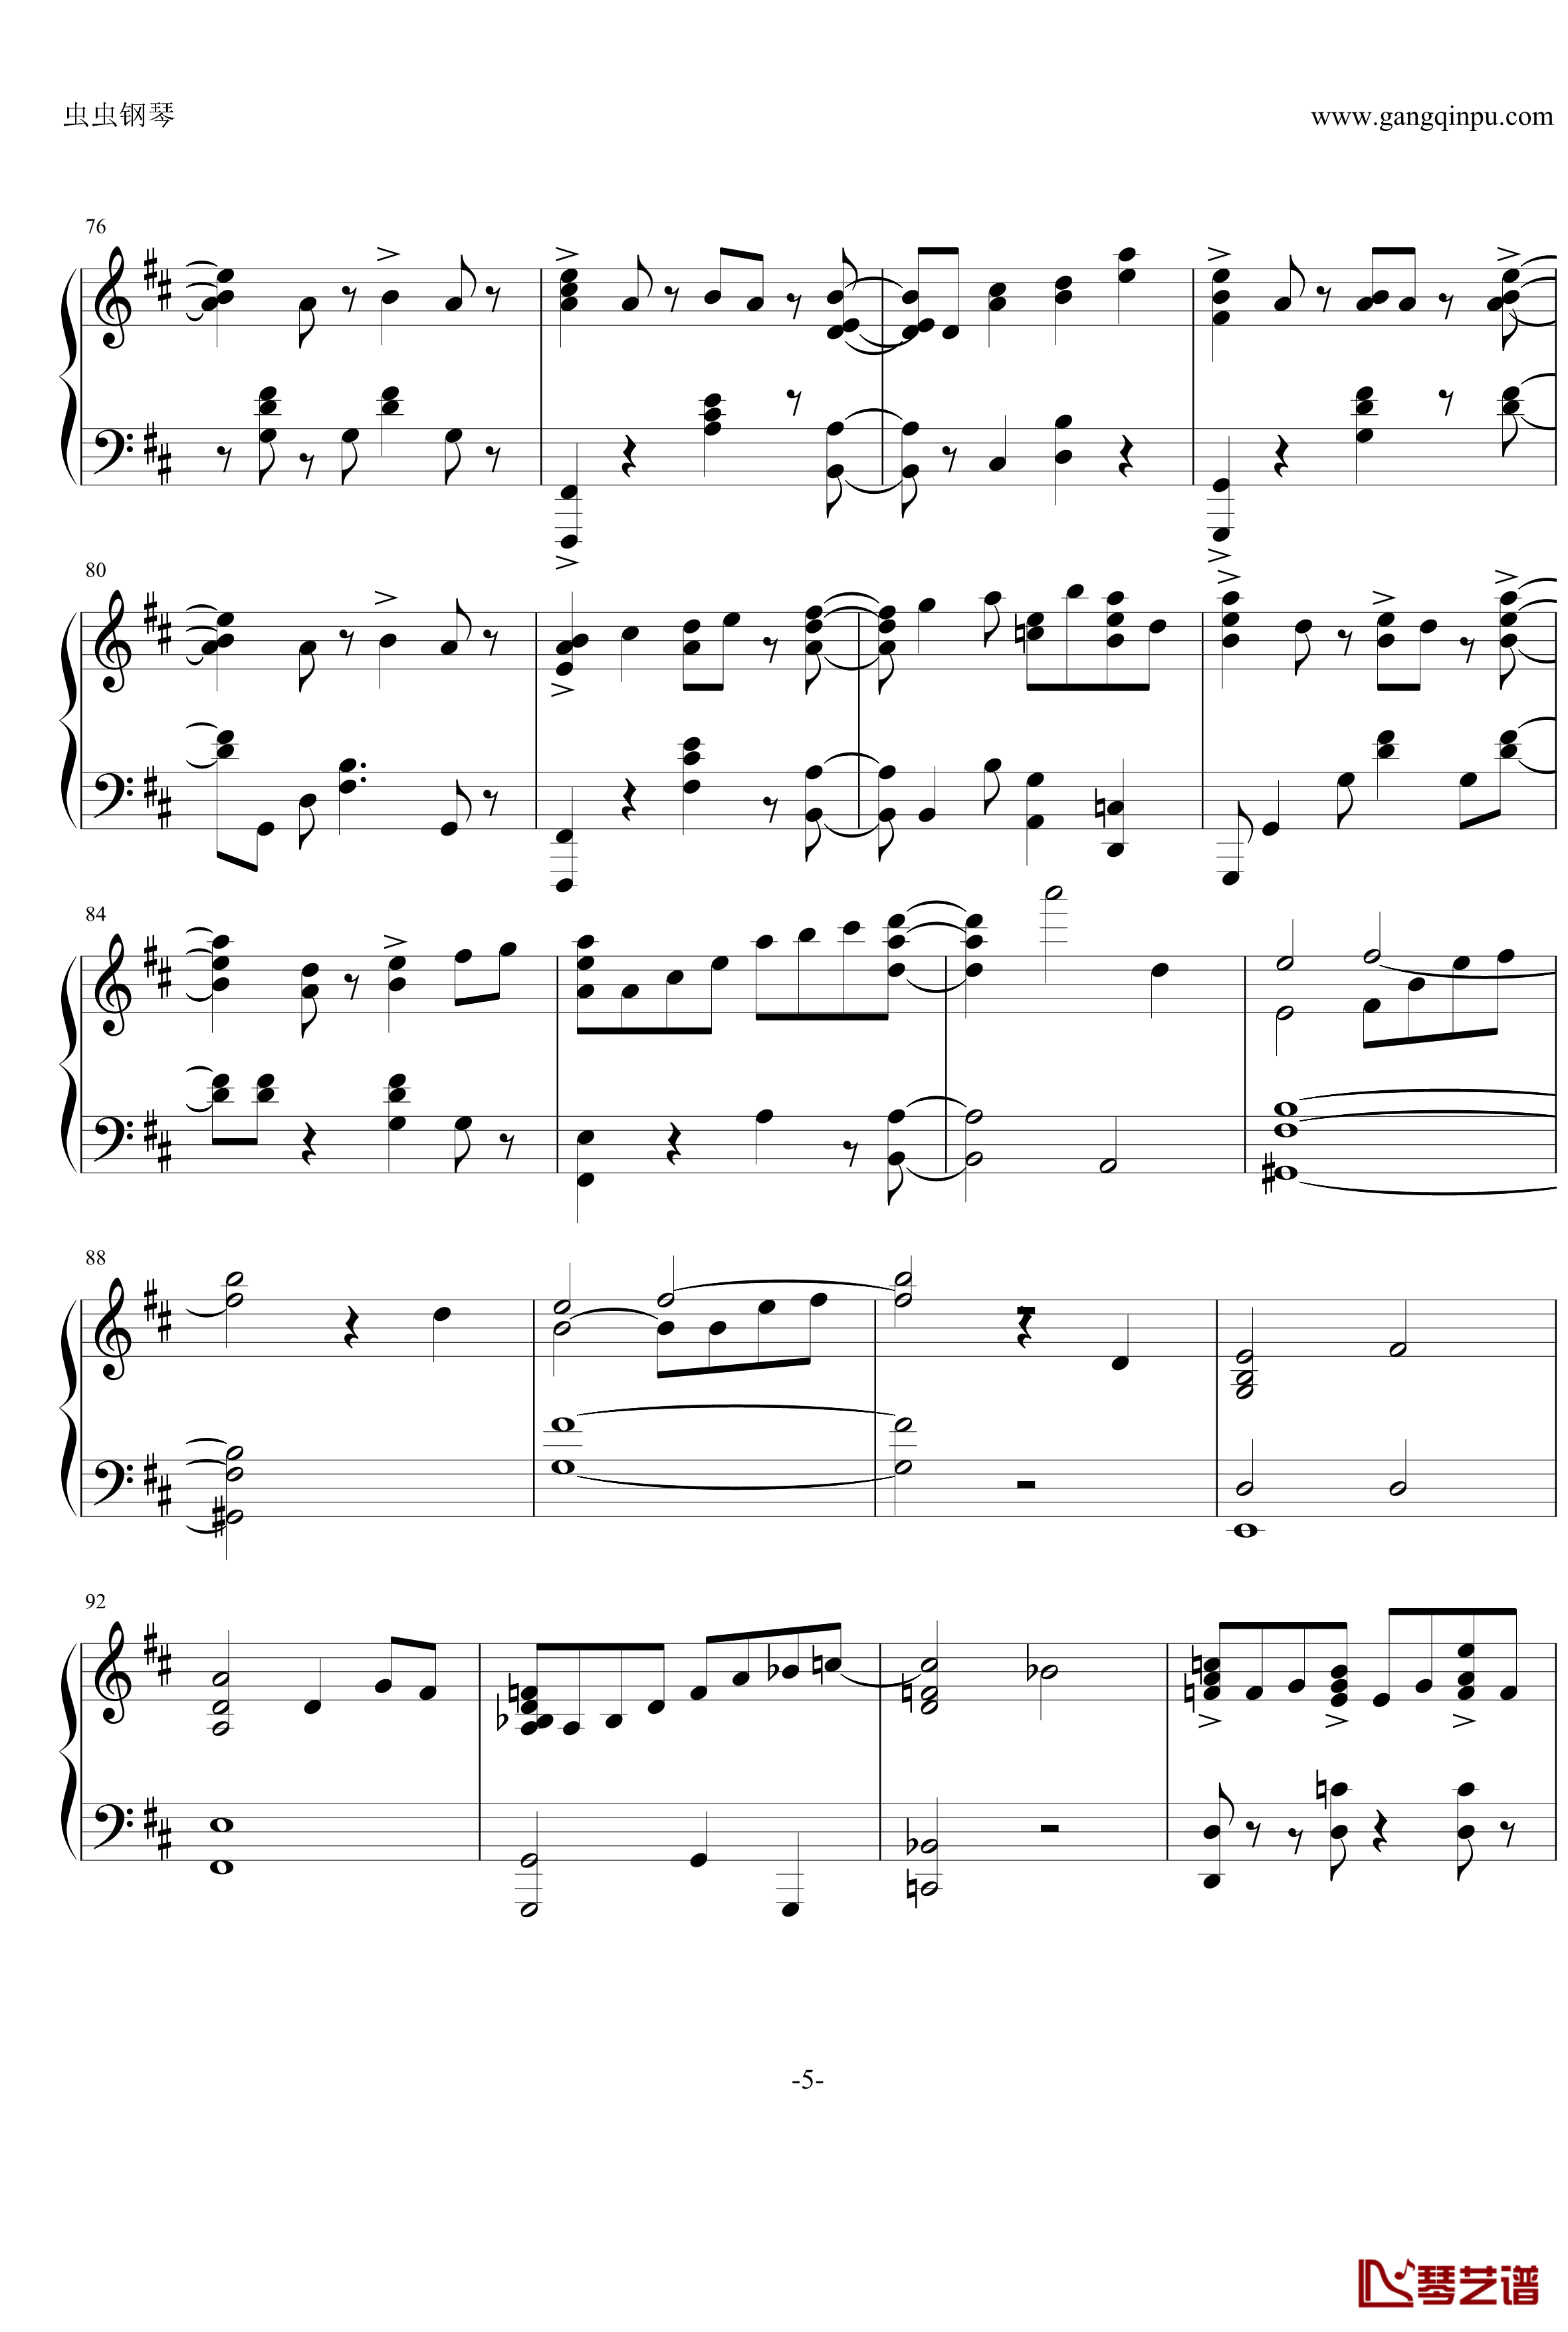 最终幻想13雷霆主题音乐钢琴谱-ライトニングのテーマ 閃光-最终幻想5